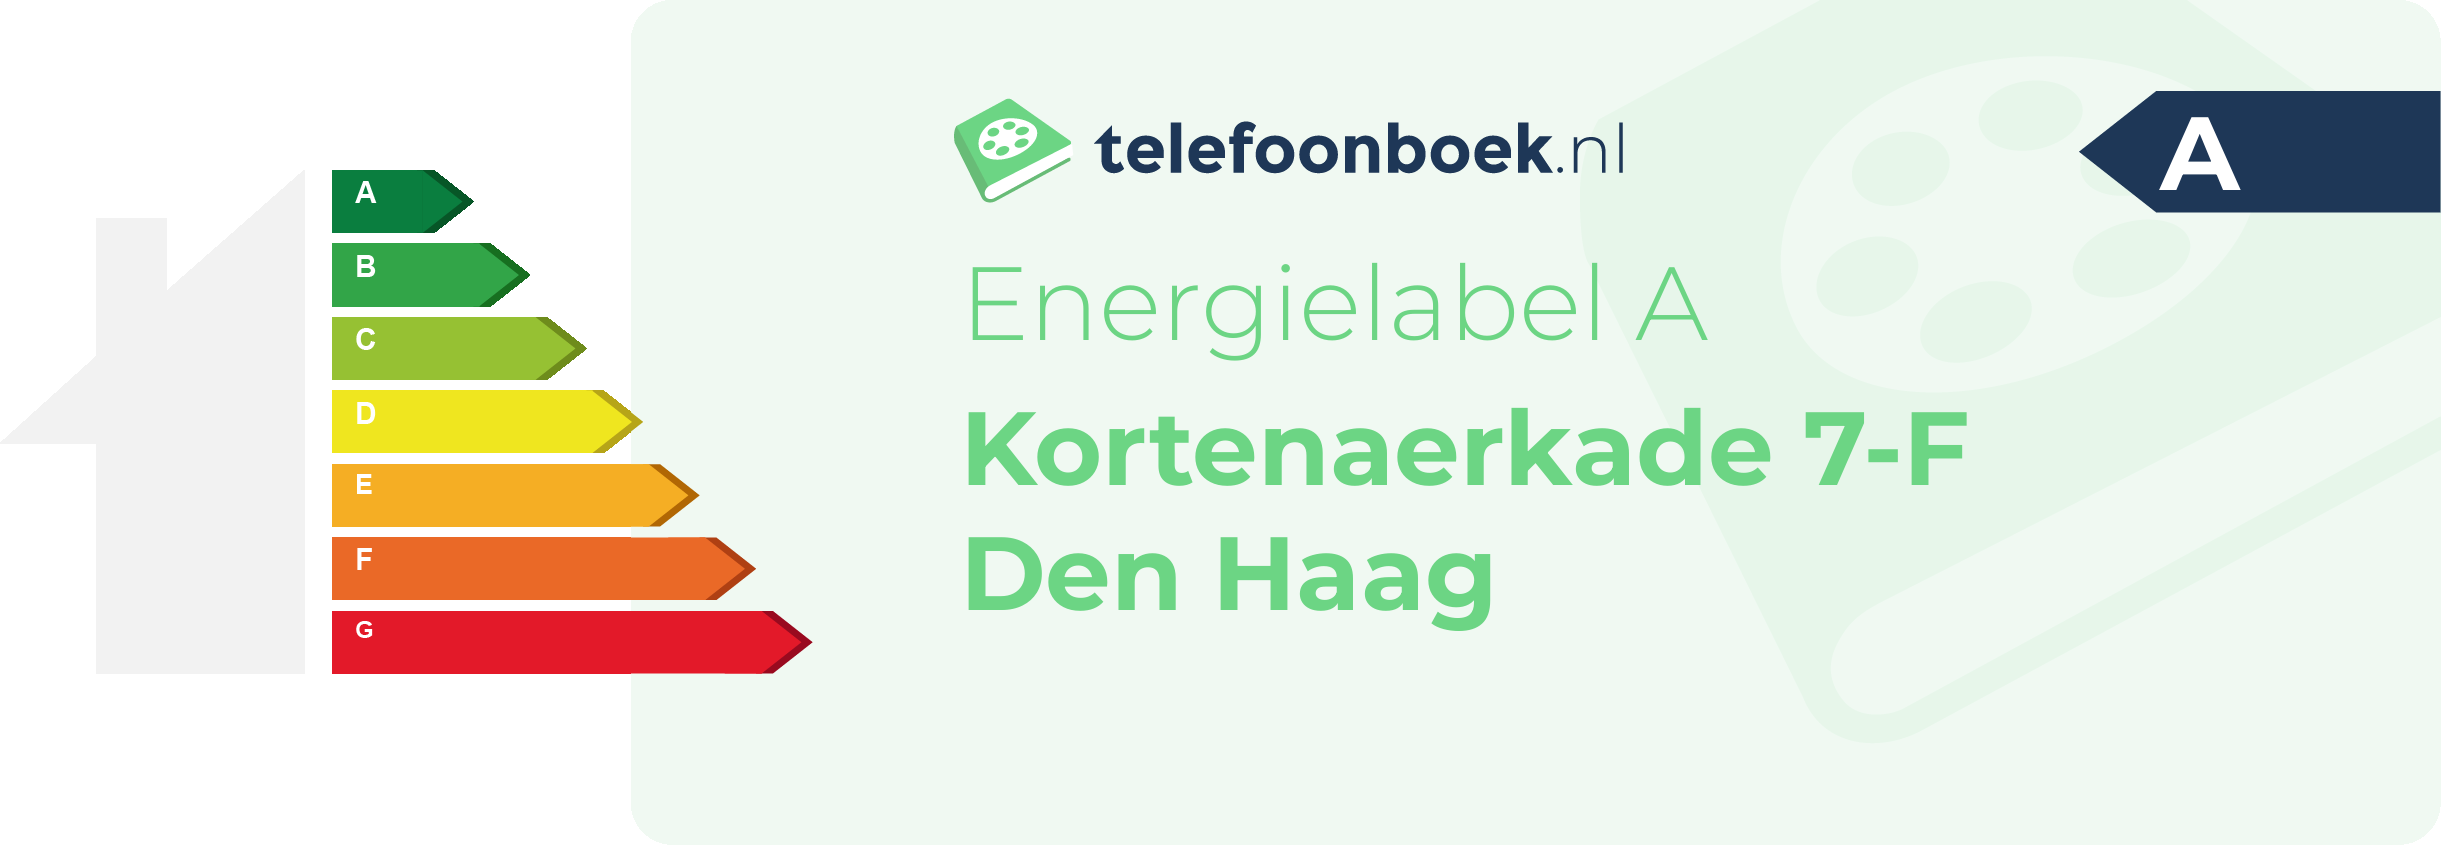 Energielabel Kortenaerkade 7-F Den Haag